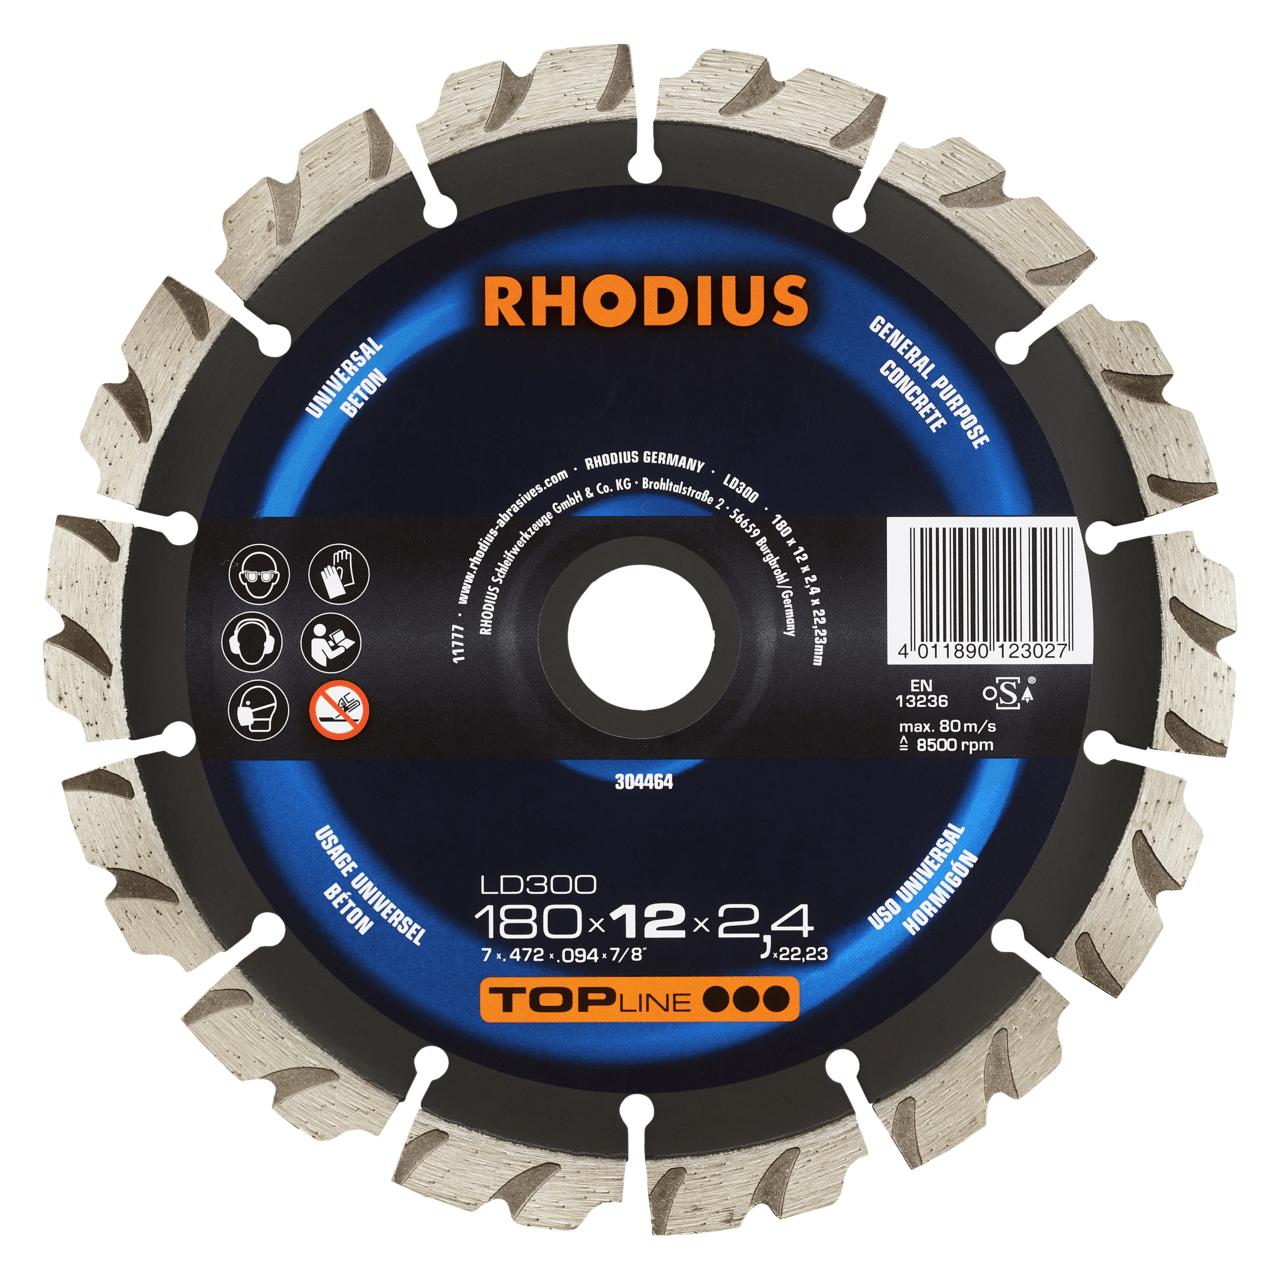 RHODIUS Diamanttrennscheibe LD300 Ø 180 mm | 304464